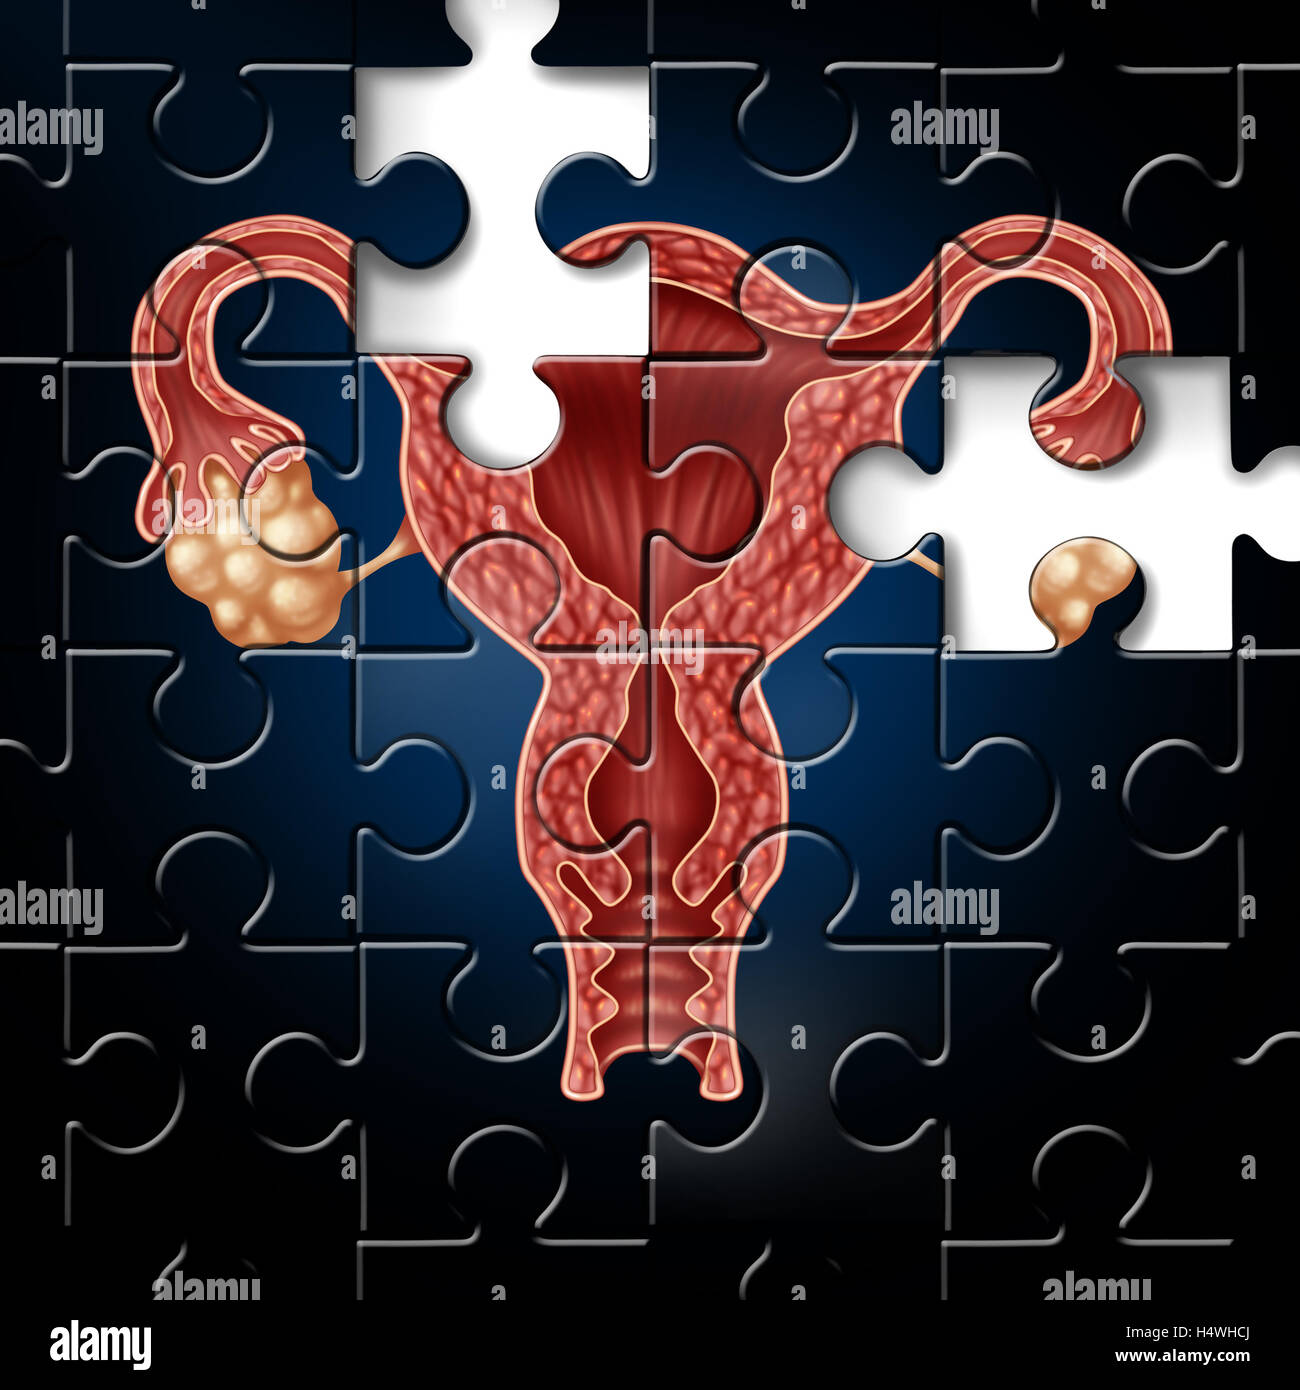 Sfida di fertilità e infertilità simbolo medico come un puzzle incompleto con un'immagine di un utero con le tube di falloppio come una icona di ginecologia per problemi nella riproduzione femminile in un 3D illustrazione dello stile. Foto Stock